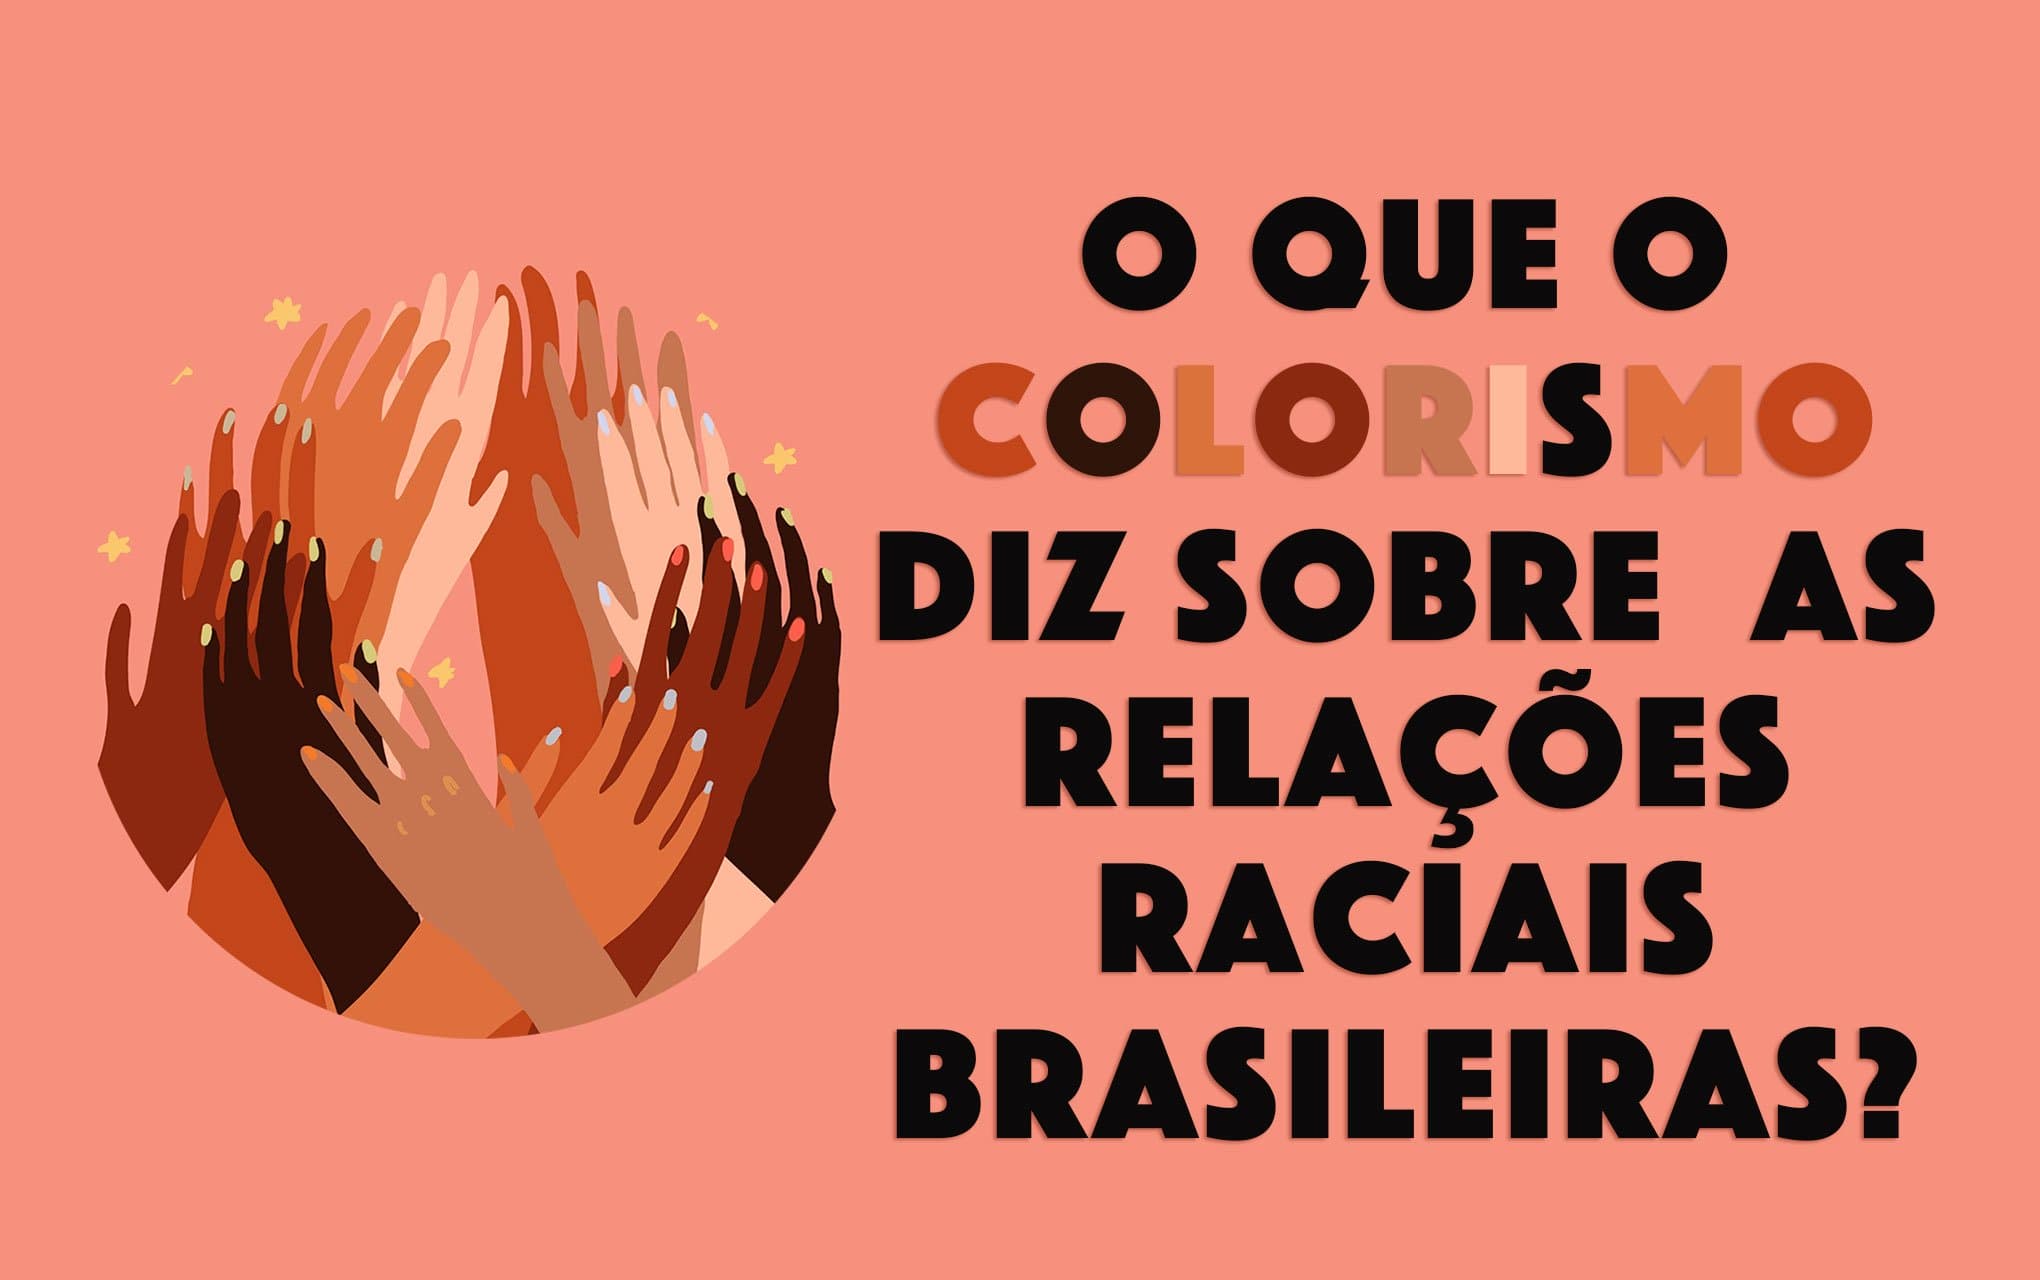 O que o colorismo diz sobre as relações raciais brasileiras?